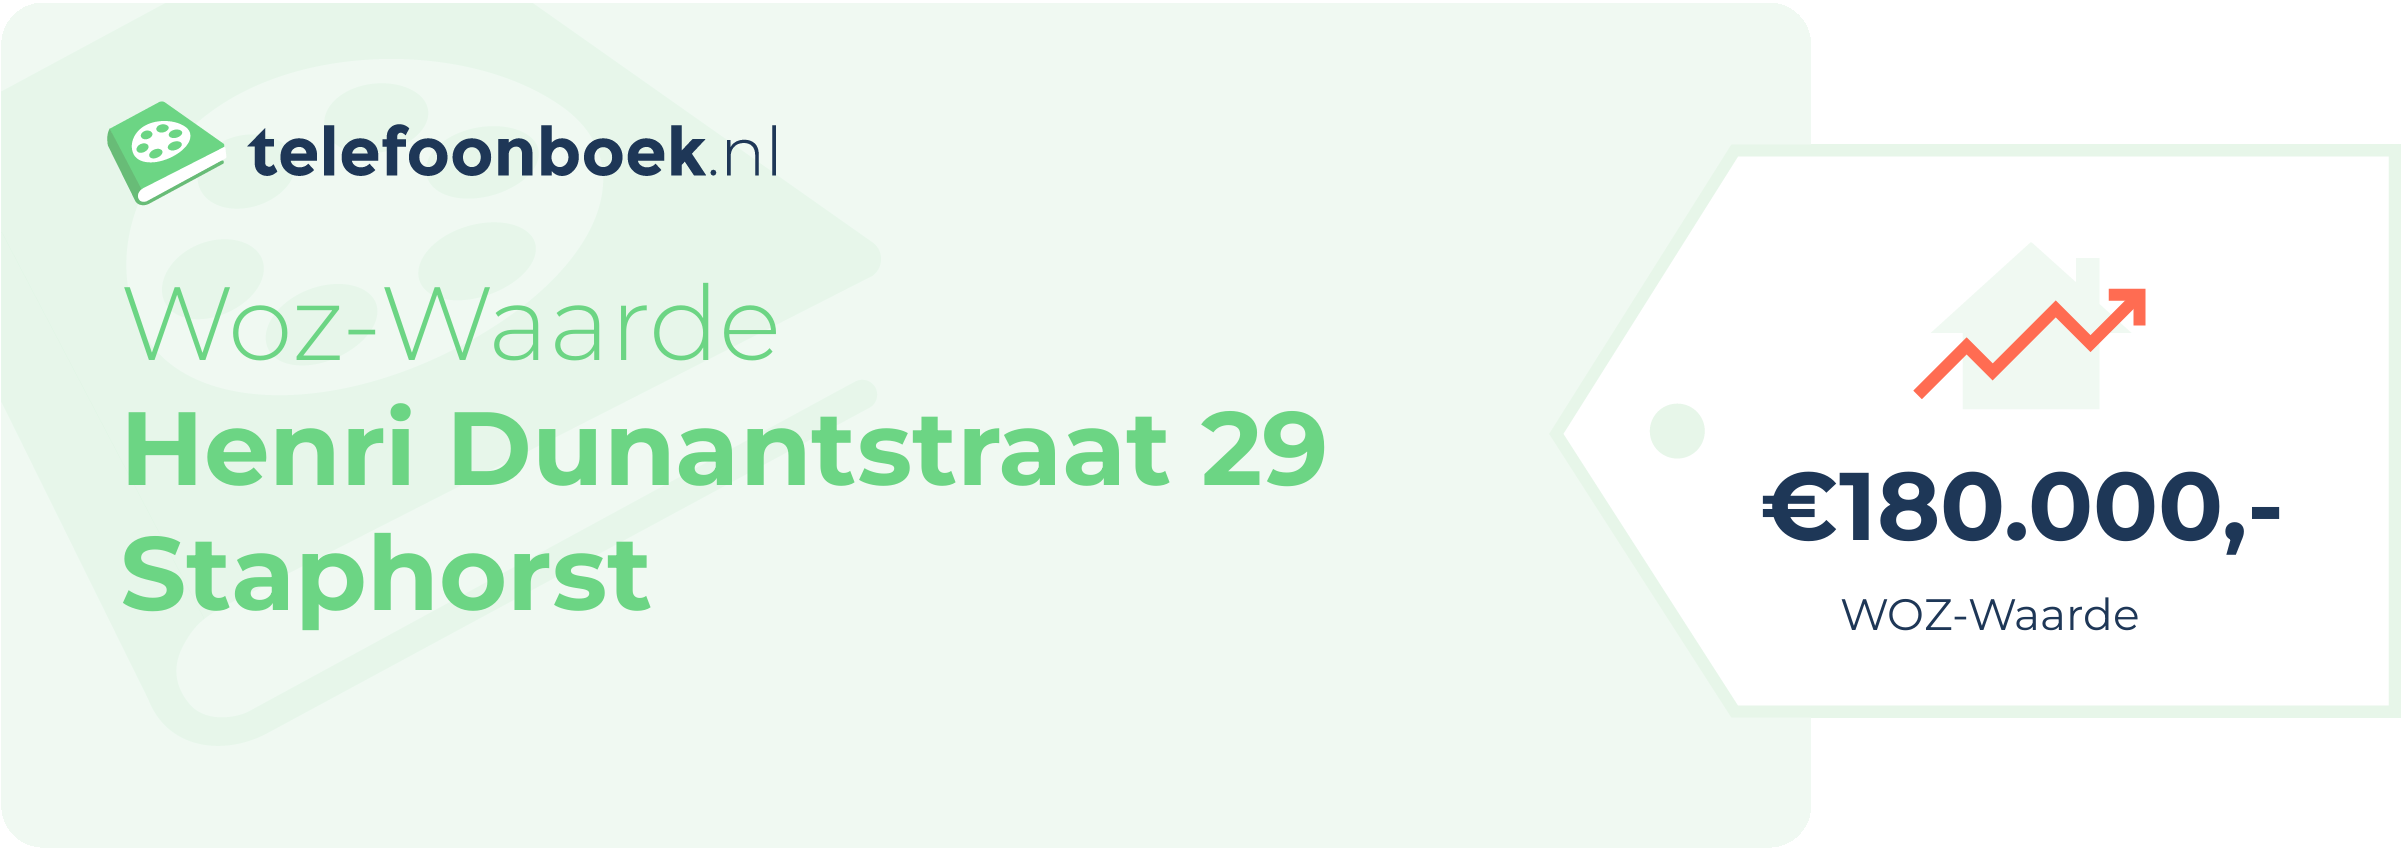 WOZ-waarde Henri Dunantstraat 29 Staphorst